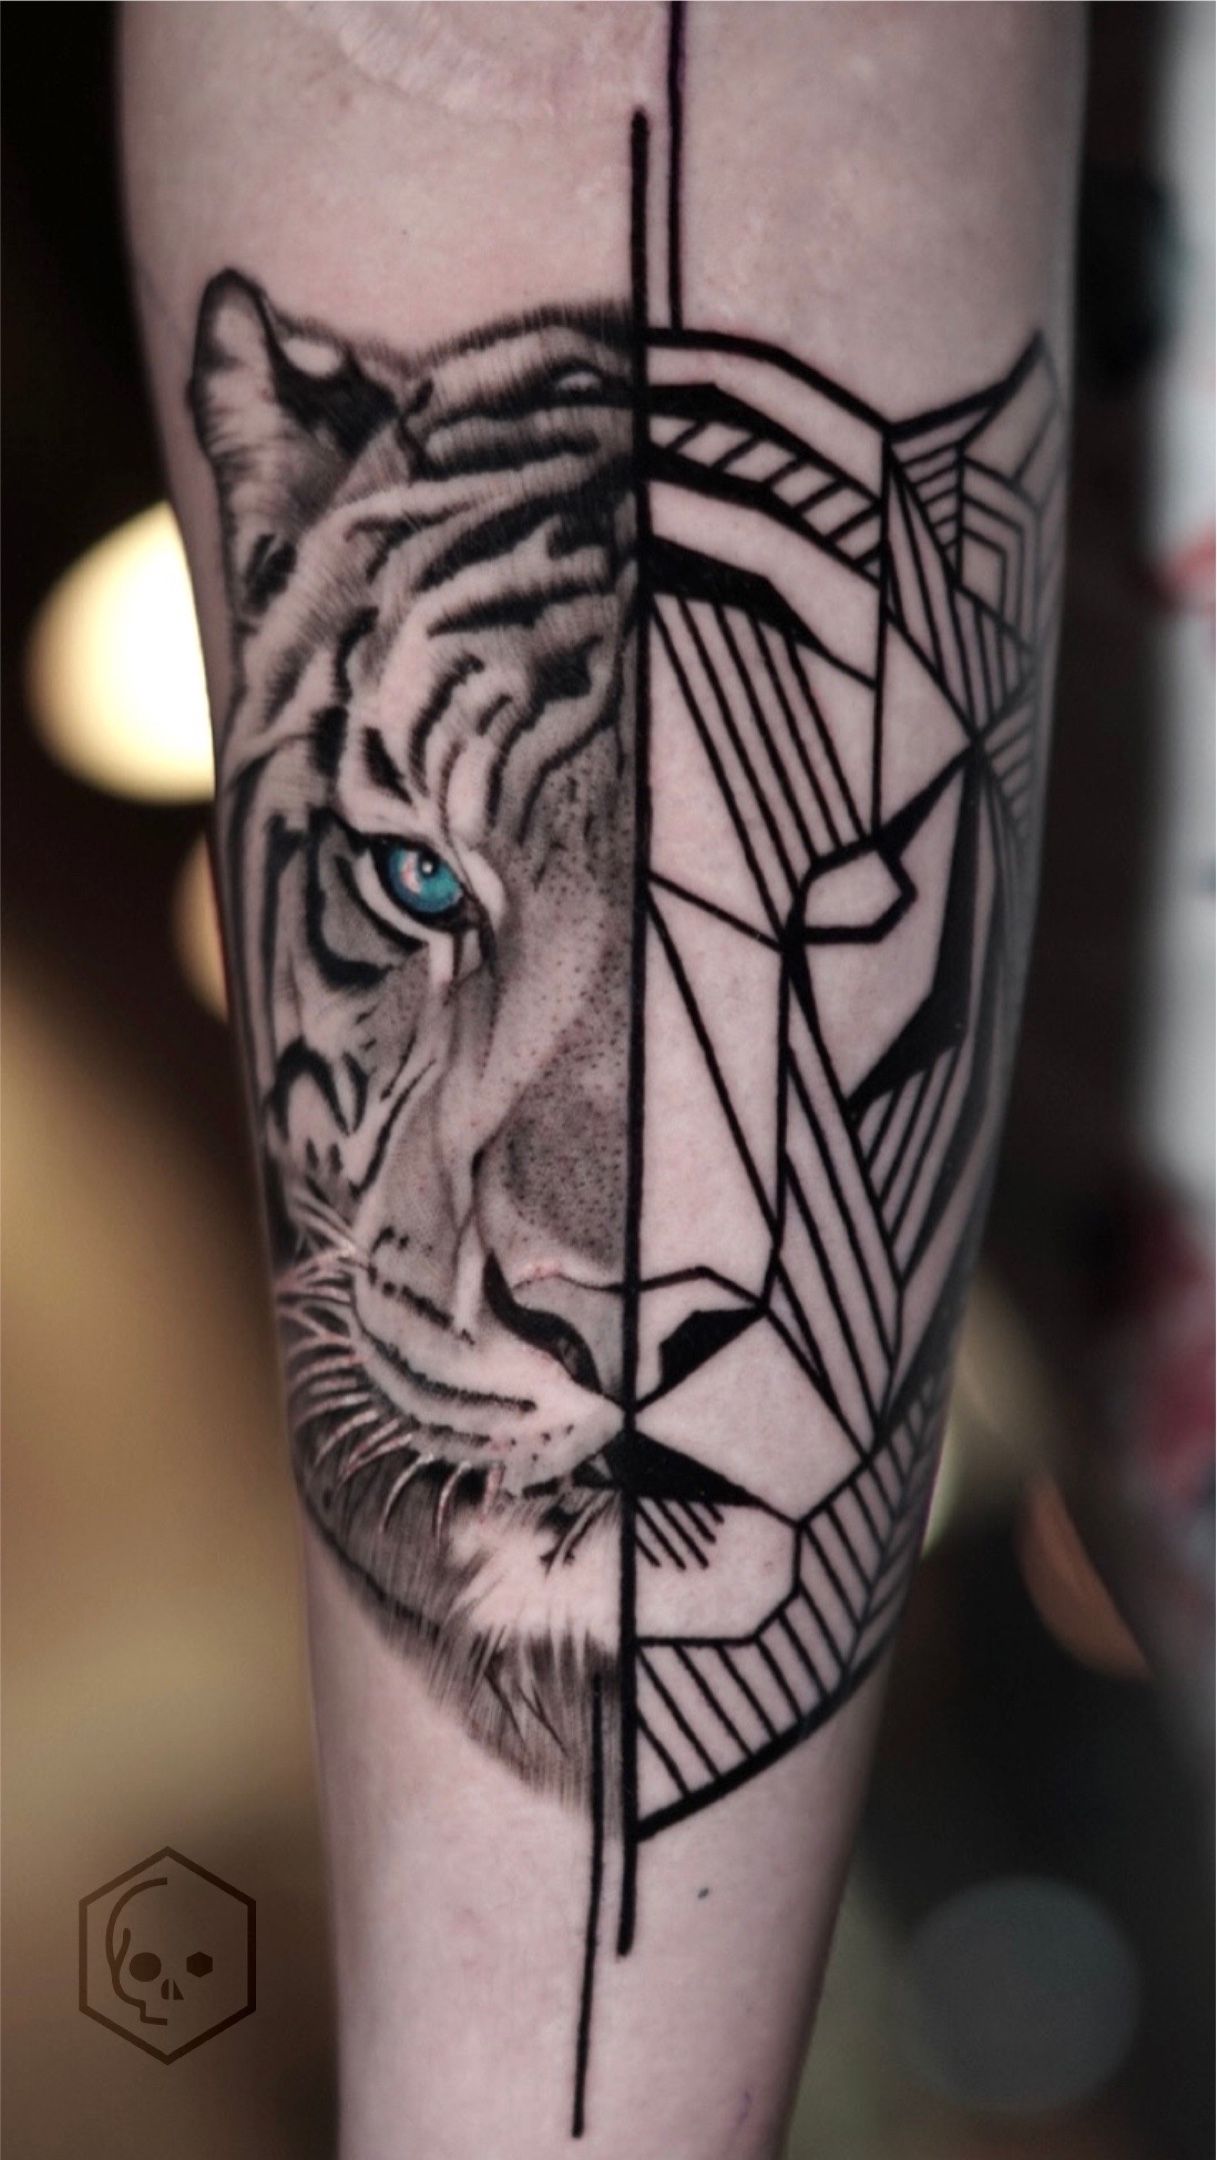 Tattoo uploaded by Tattooïne • #geometrictattoo #dotworktattoo #geometric  #dotwork #tigertattoo #tigerhead #fineline #tattooïne #femaletattooartist •  Tattoodo